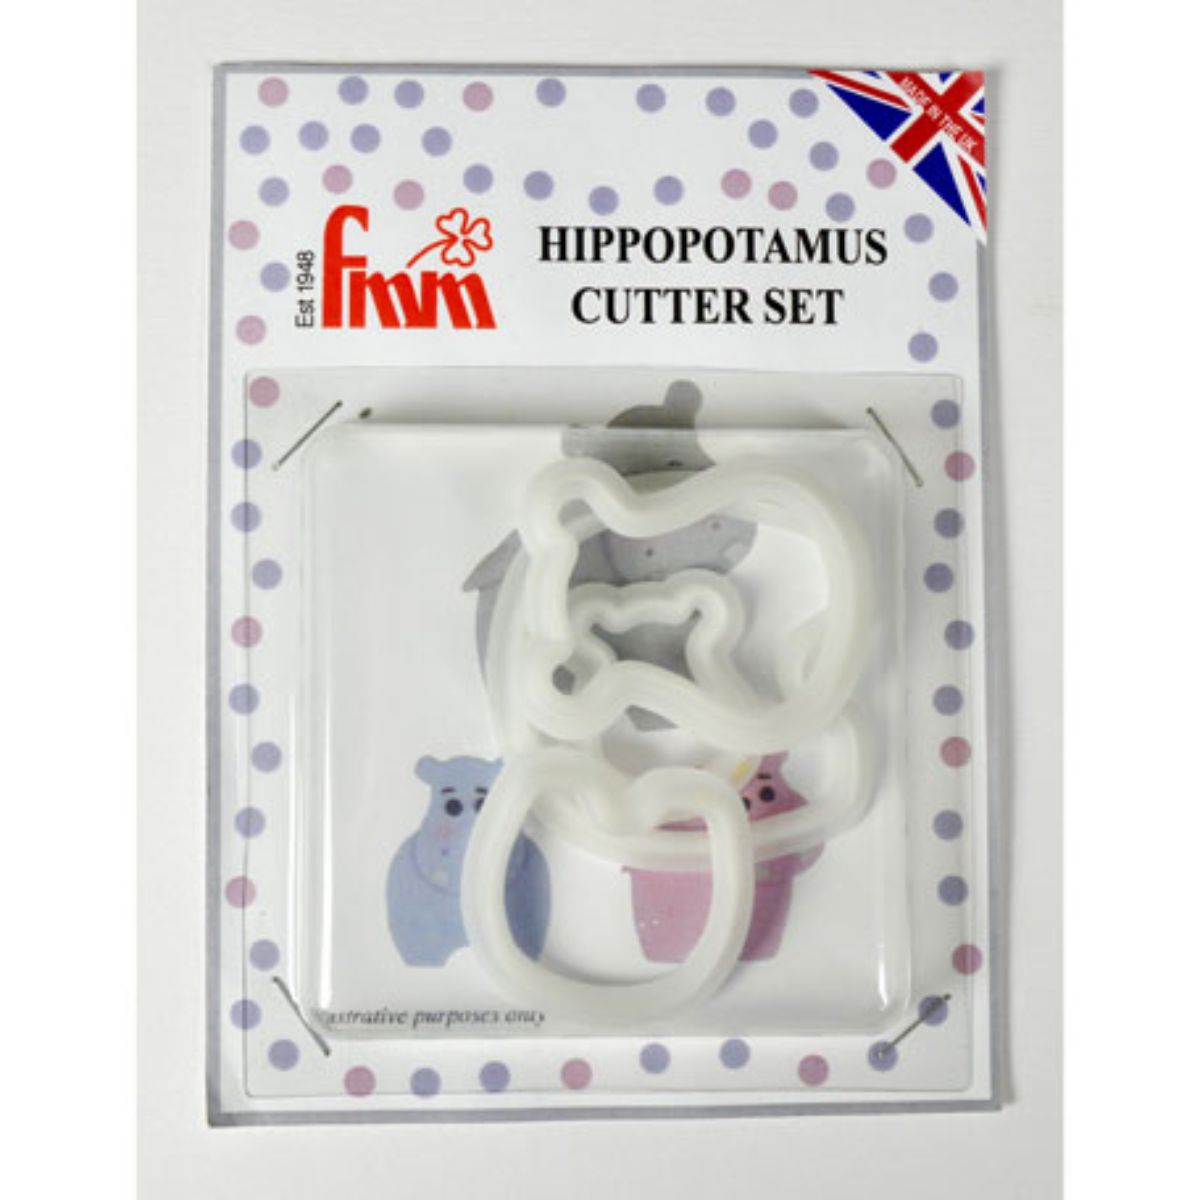 FMM Hippopotamus Cutter- Set of 4